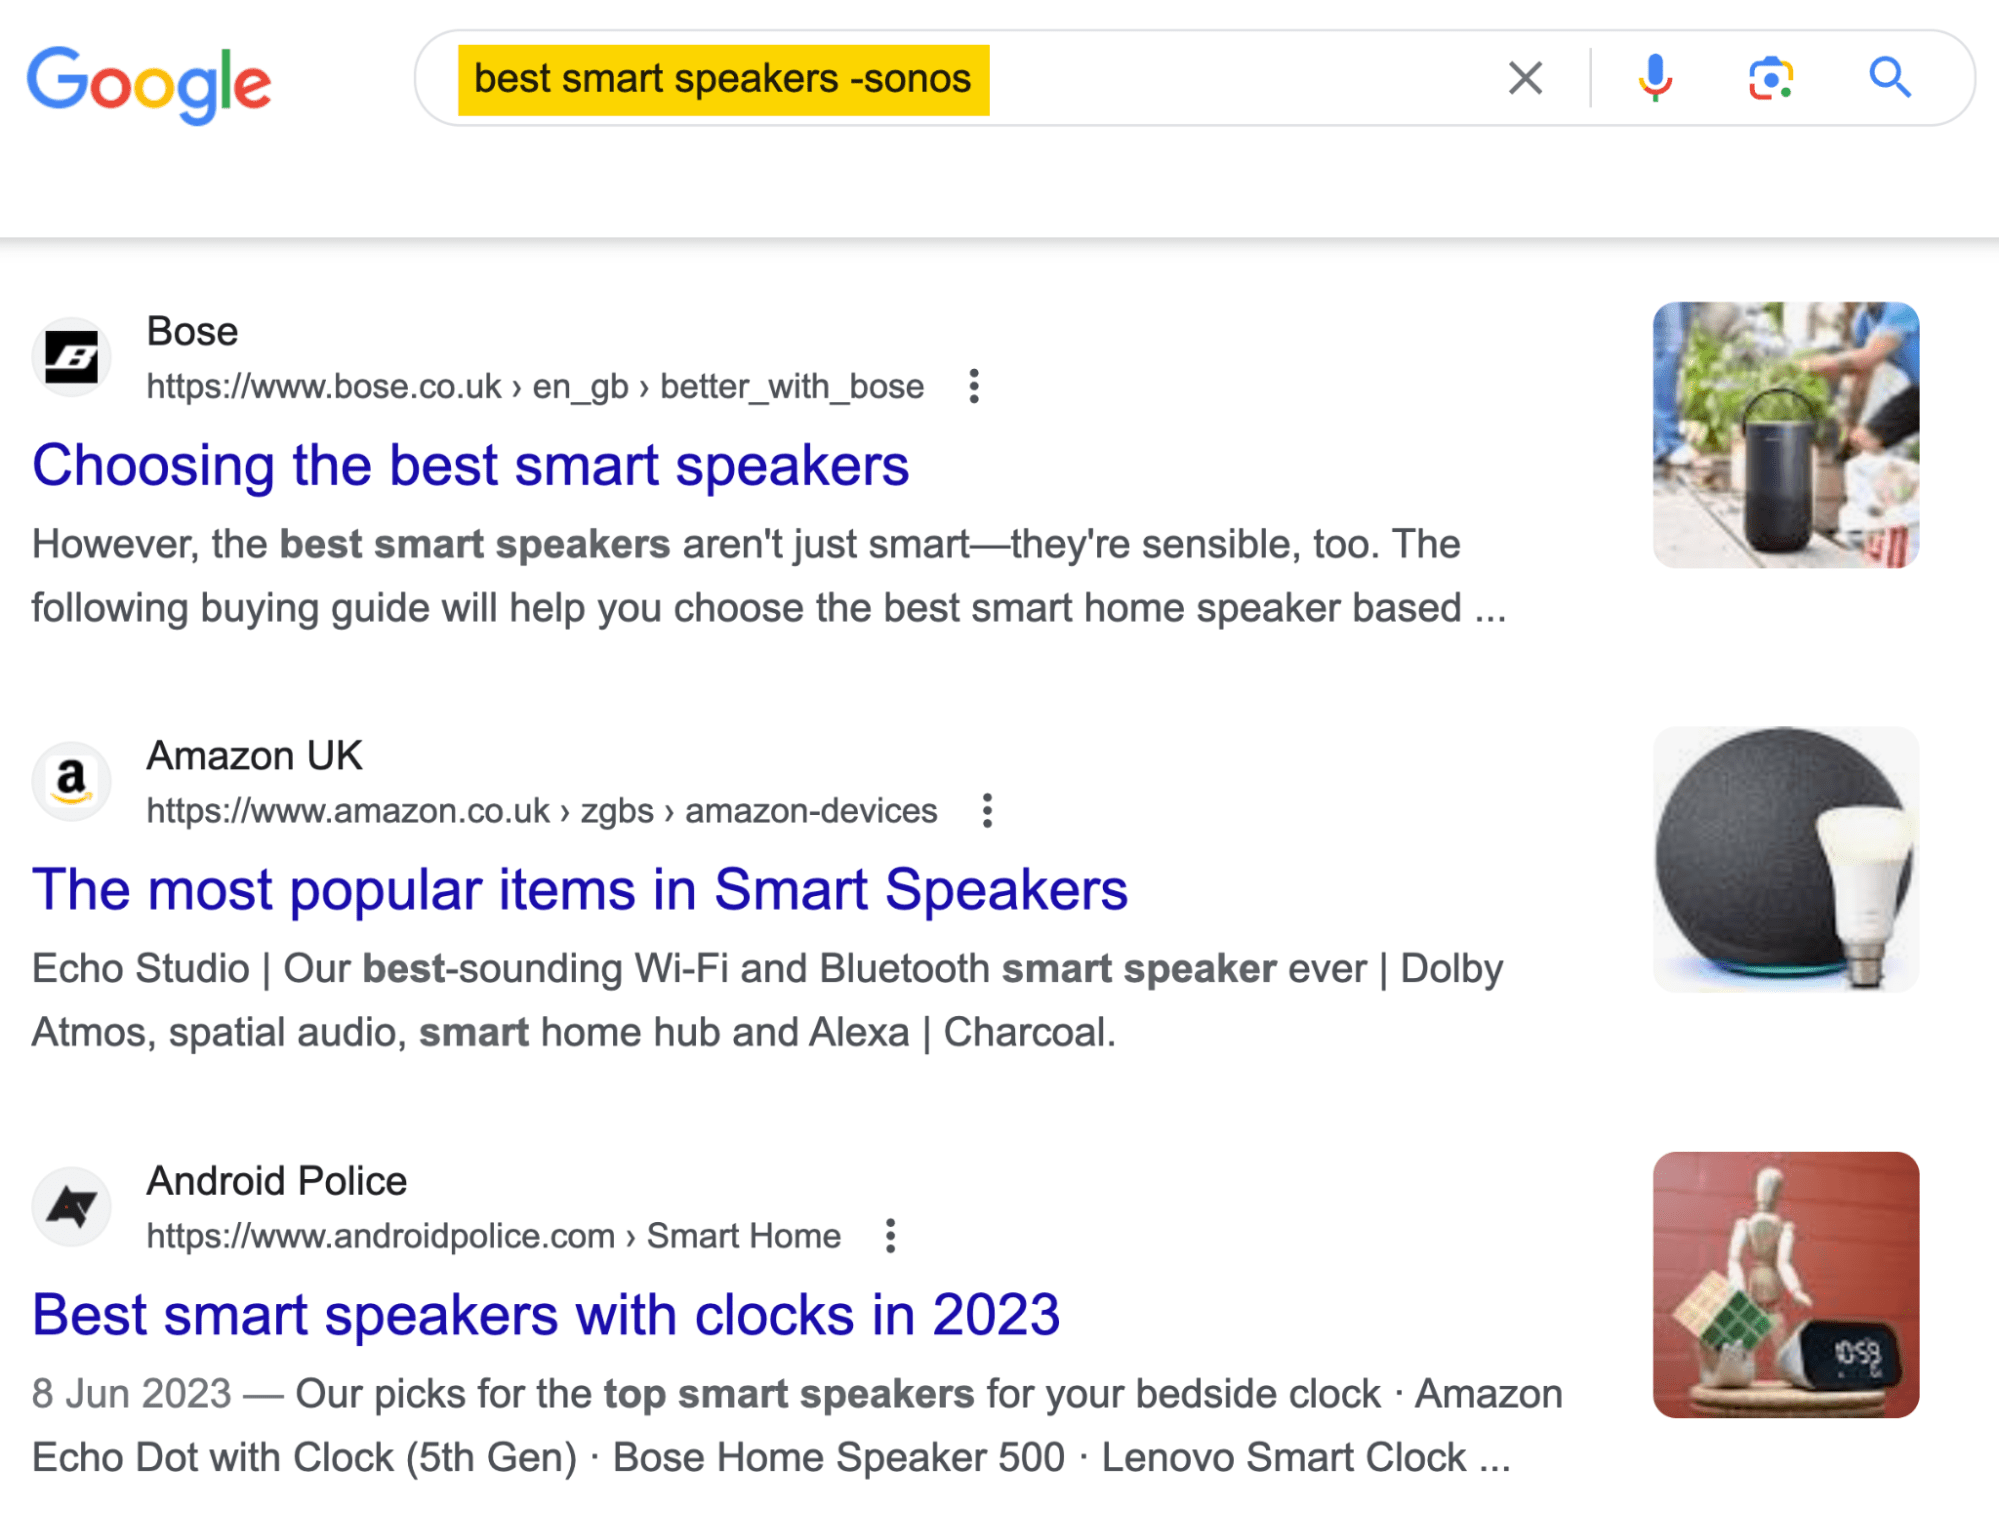 Tìm kiếm trên Google các danh sách sản phẩm loại trừ một thương hiệu cụ thể